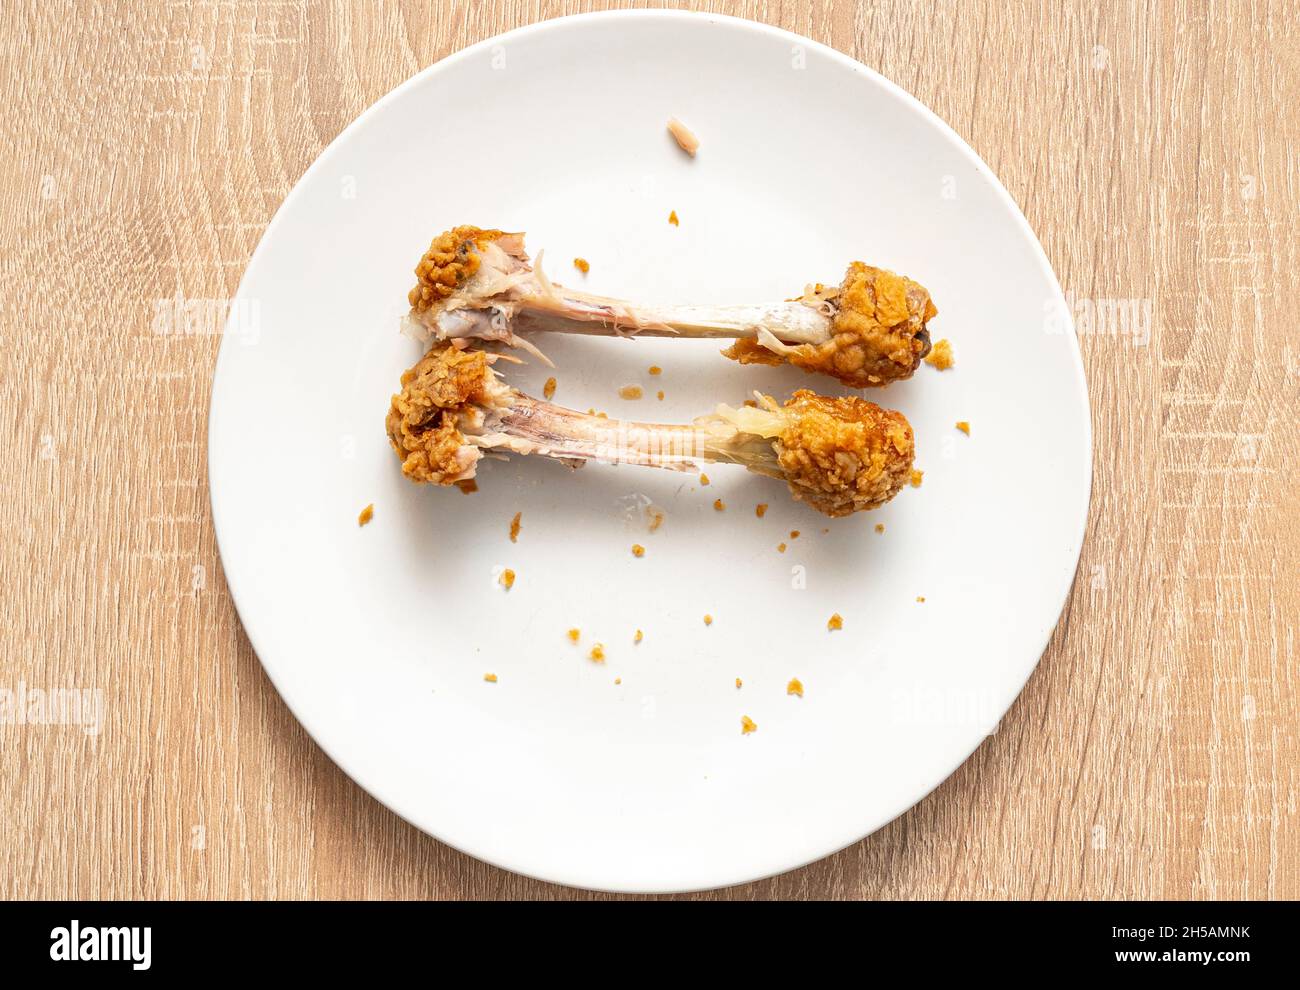 Zwei Hühnerknochen, die auf einem weißen Teller übrig sind. Ungesunde Fast Food, Hühnerbeine, Draufsicht Stockfoto